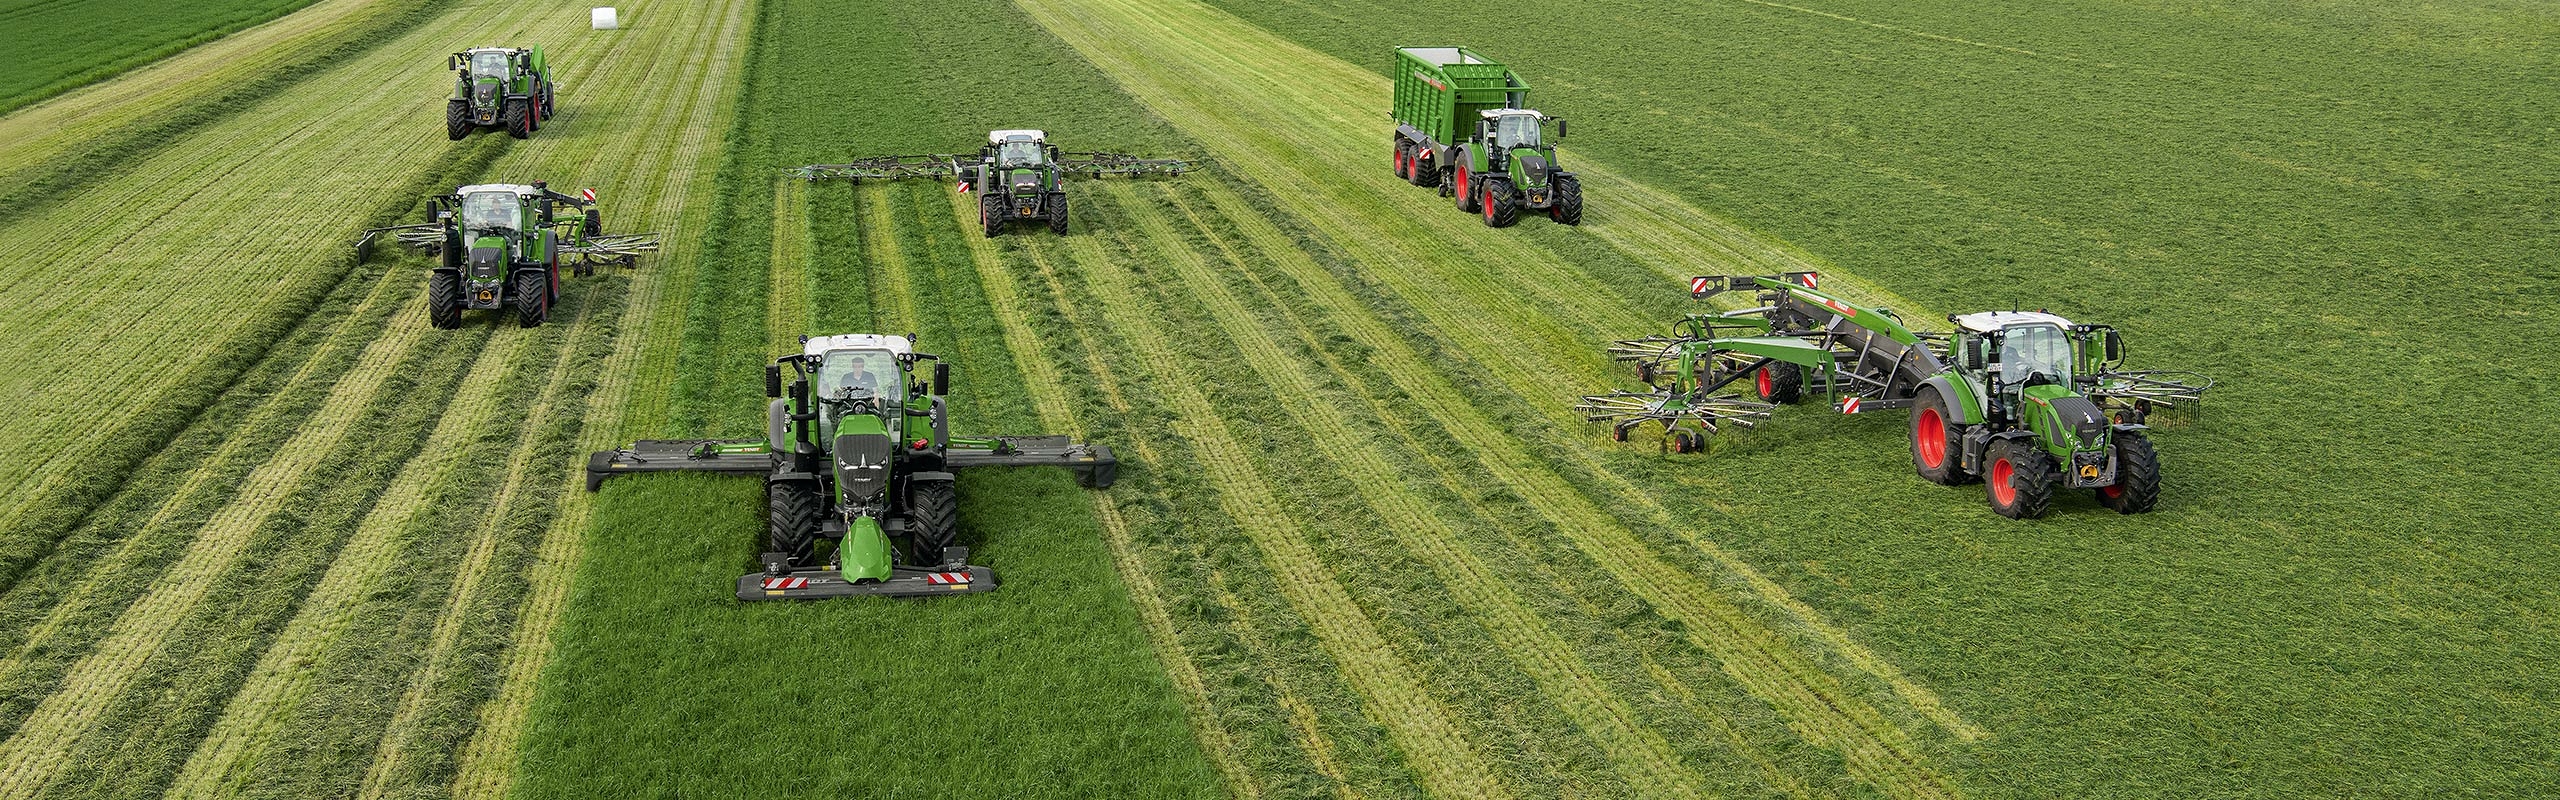 Mehrere Fendt Traktoren mit unterschiedlichen Anbaugeräten fahren nebeneinander auf einem Feld